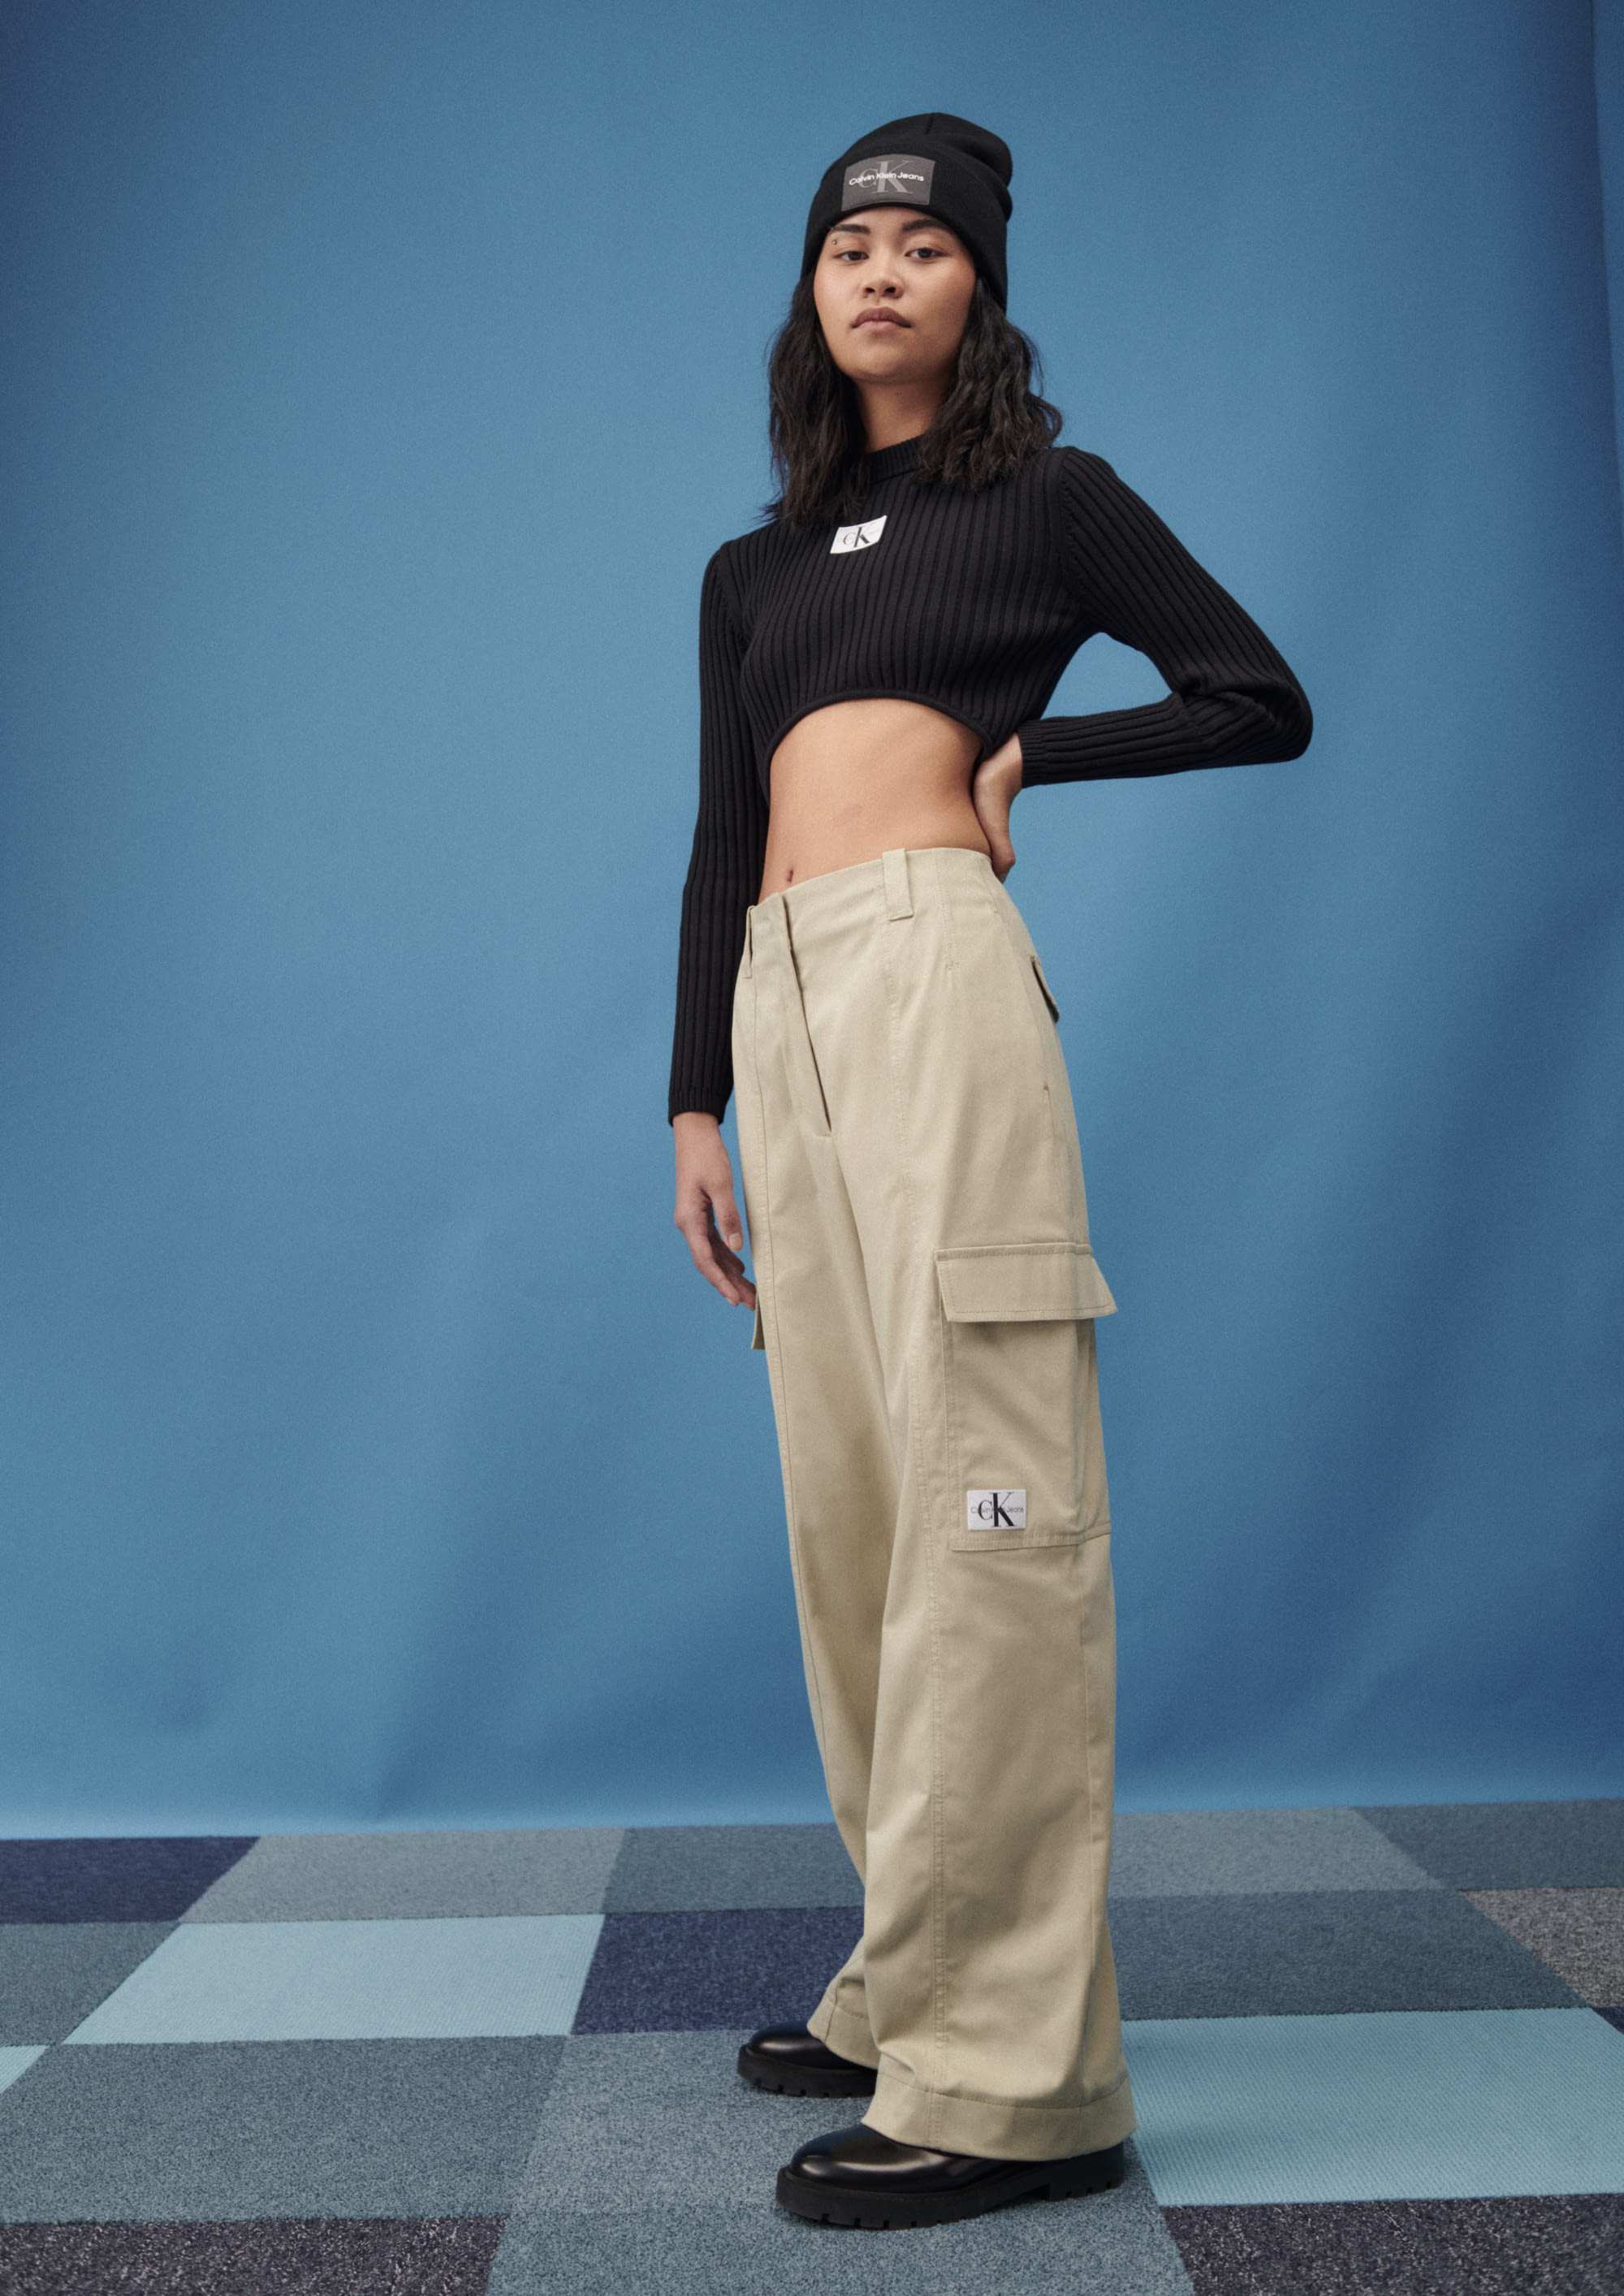 Calvin Klein Jeans PF22 womenswear #11 - Tagwalk: The Fashion